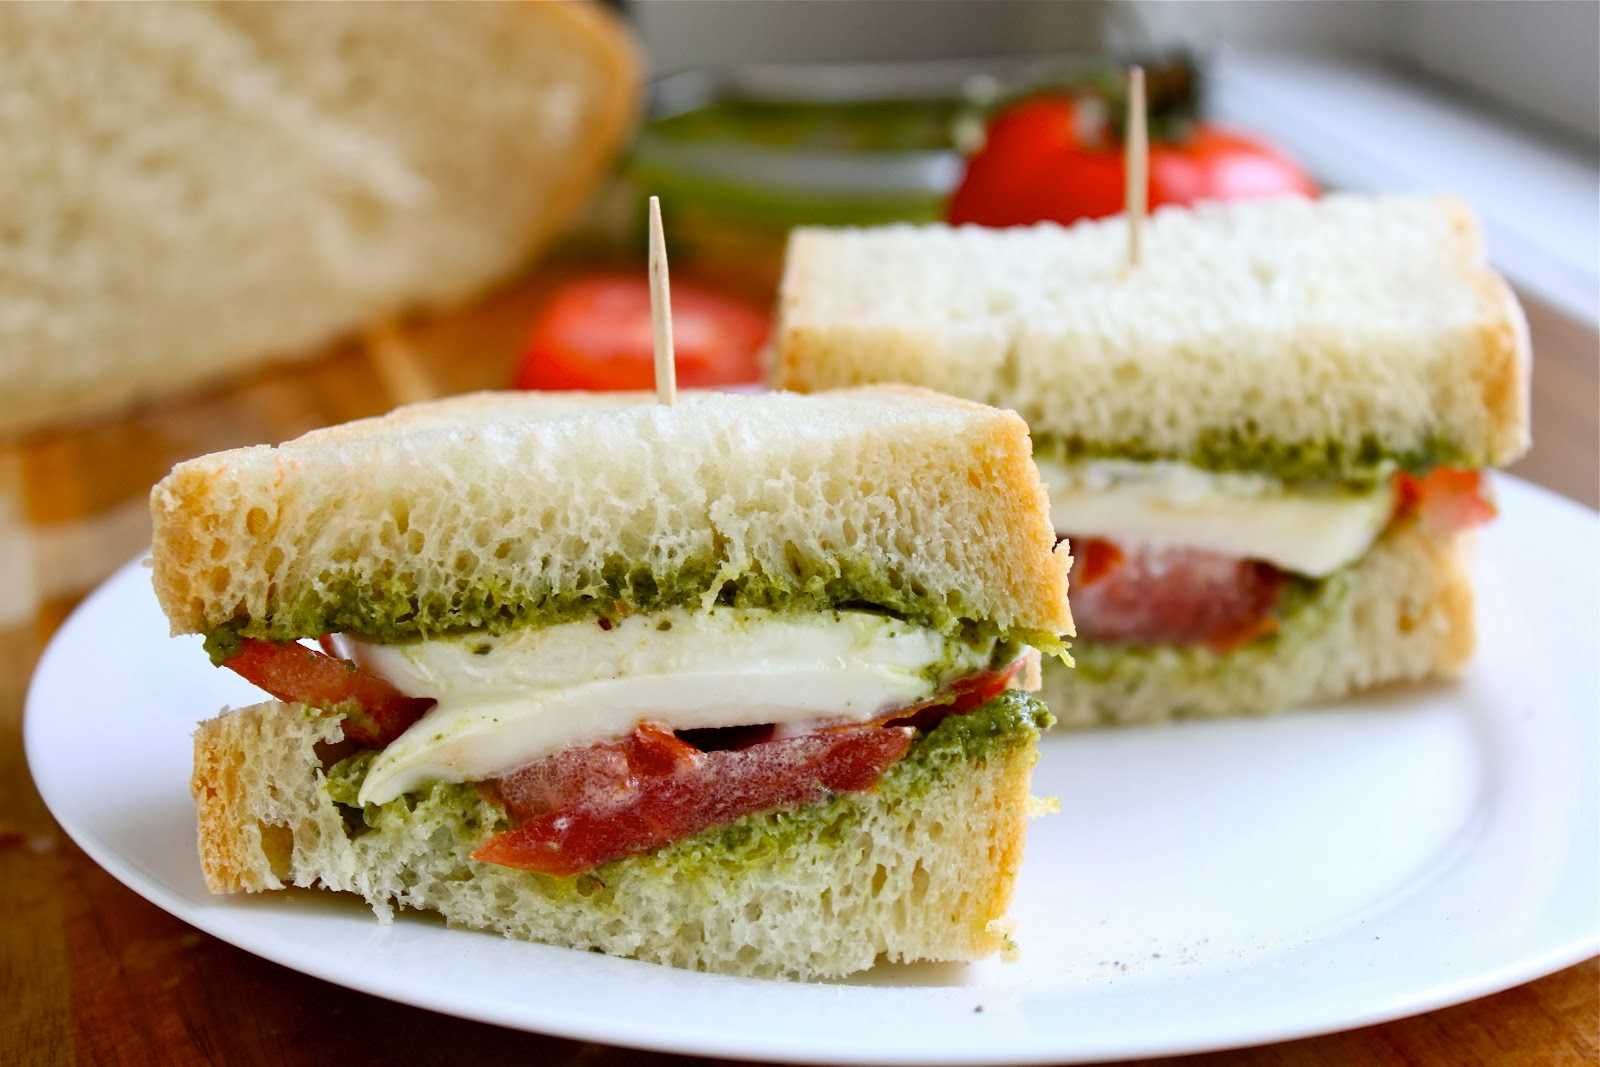 Пп бутерброды на завтрак: полезные сэндвичи, гренки, тосты - диетические рецепты правильного питания